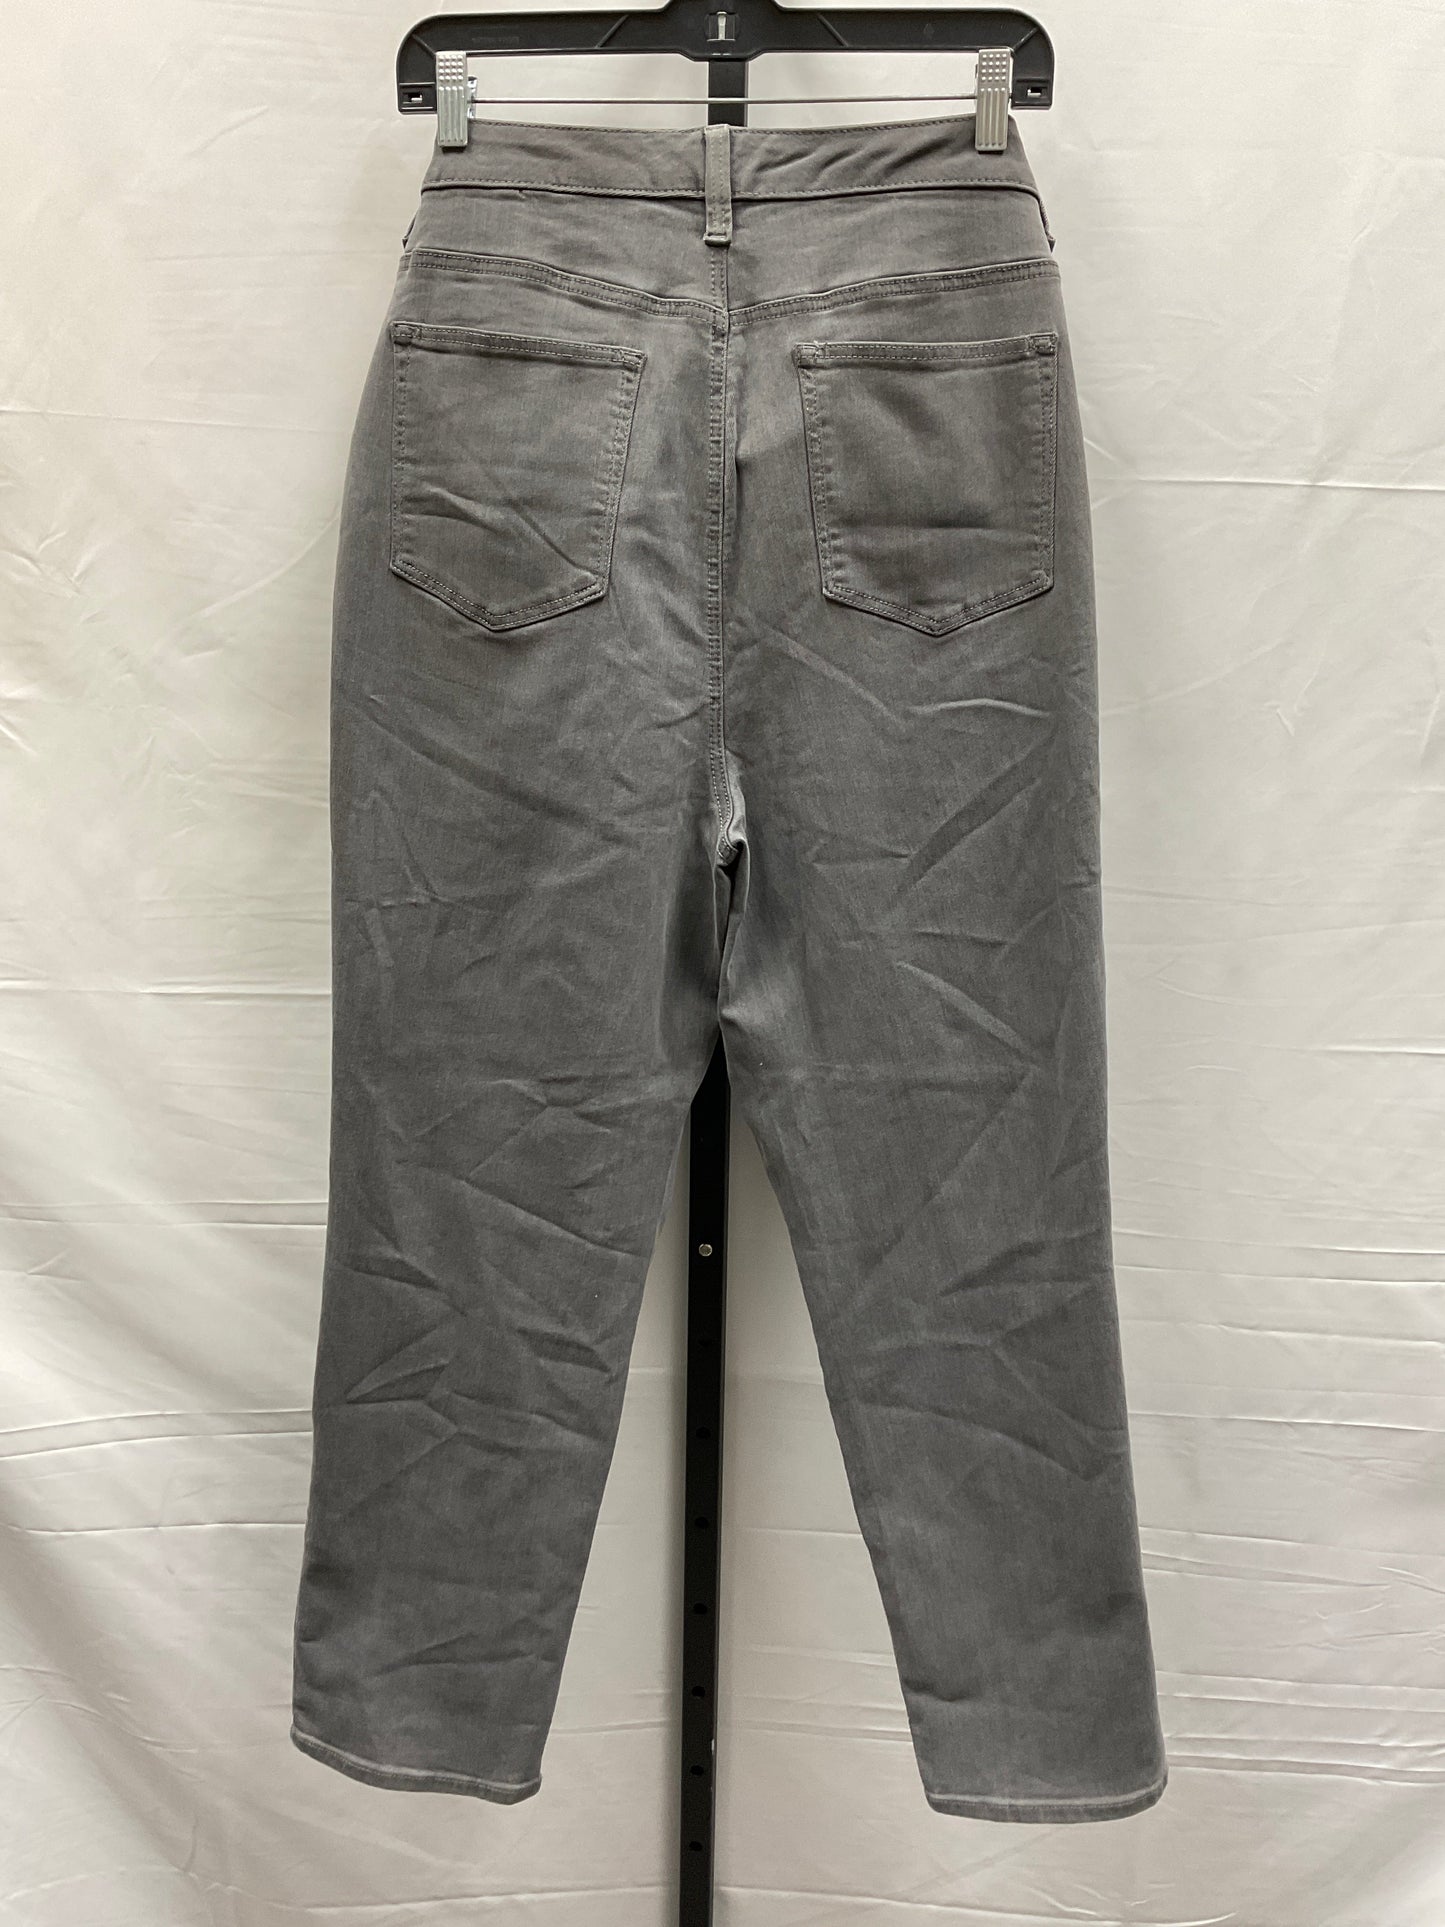 Grey Denim Jeans Straight Talbots, Size 20w